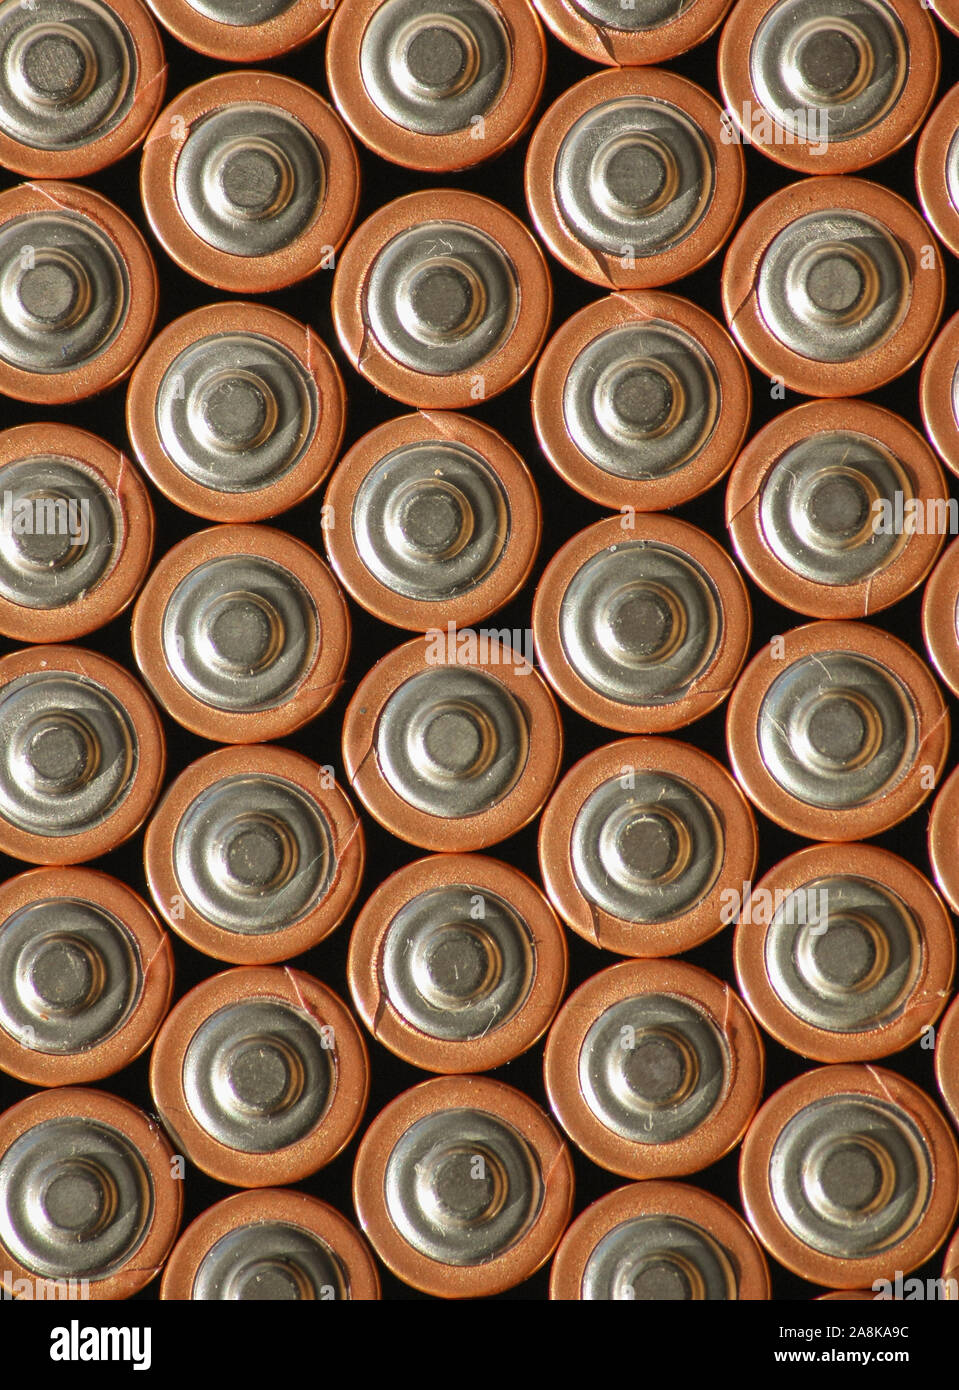 Hintergrundhintergrund der Batteriesäulen mit positiver Seite nach oben. Mehrere Akkus werden zu einem organisierten vertikalen Muster zusammengestapelt. Stockfoto